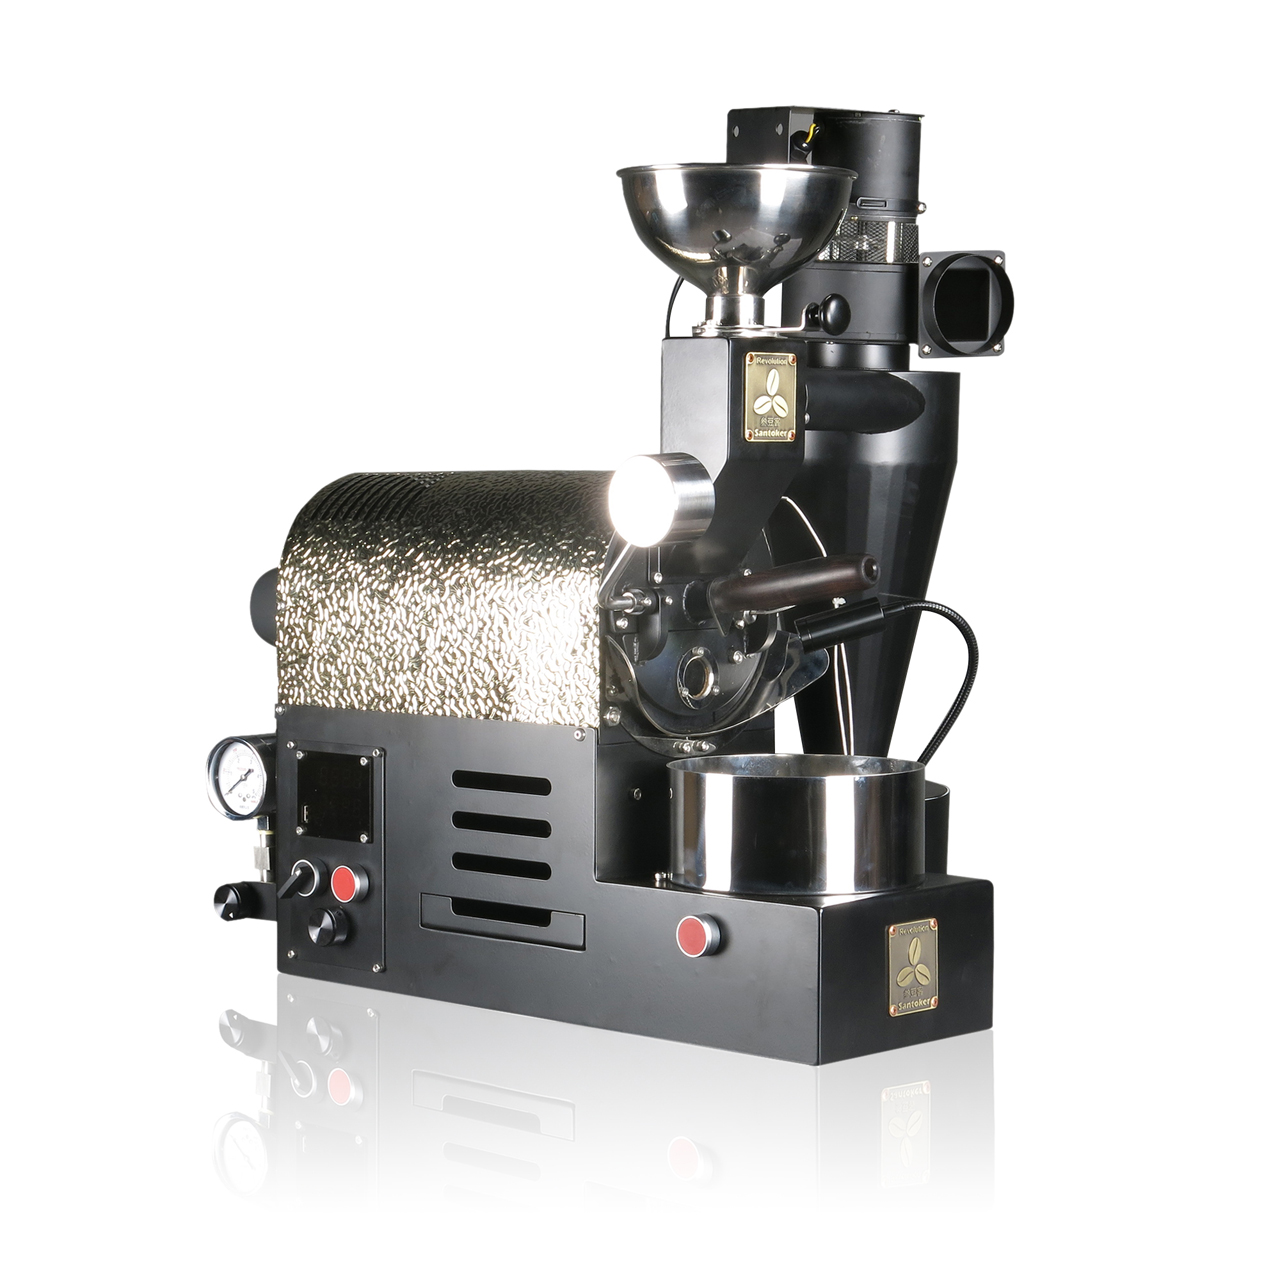 산두케 R200 소형 커피콩 로스터 로스터 홈 커피 로스터 샘플 로스터